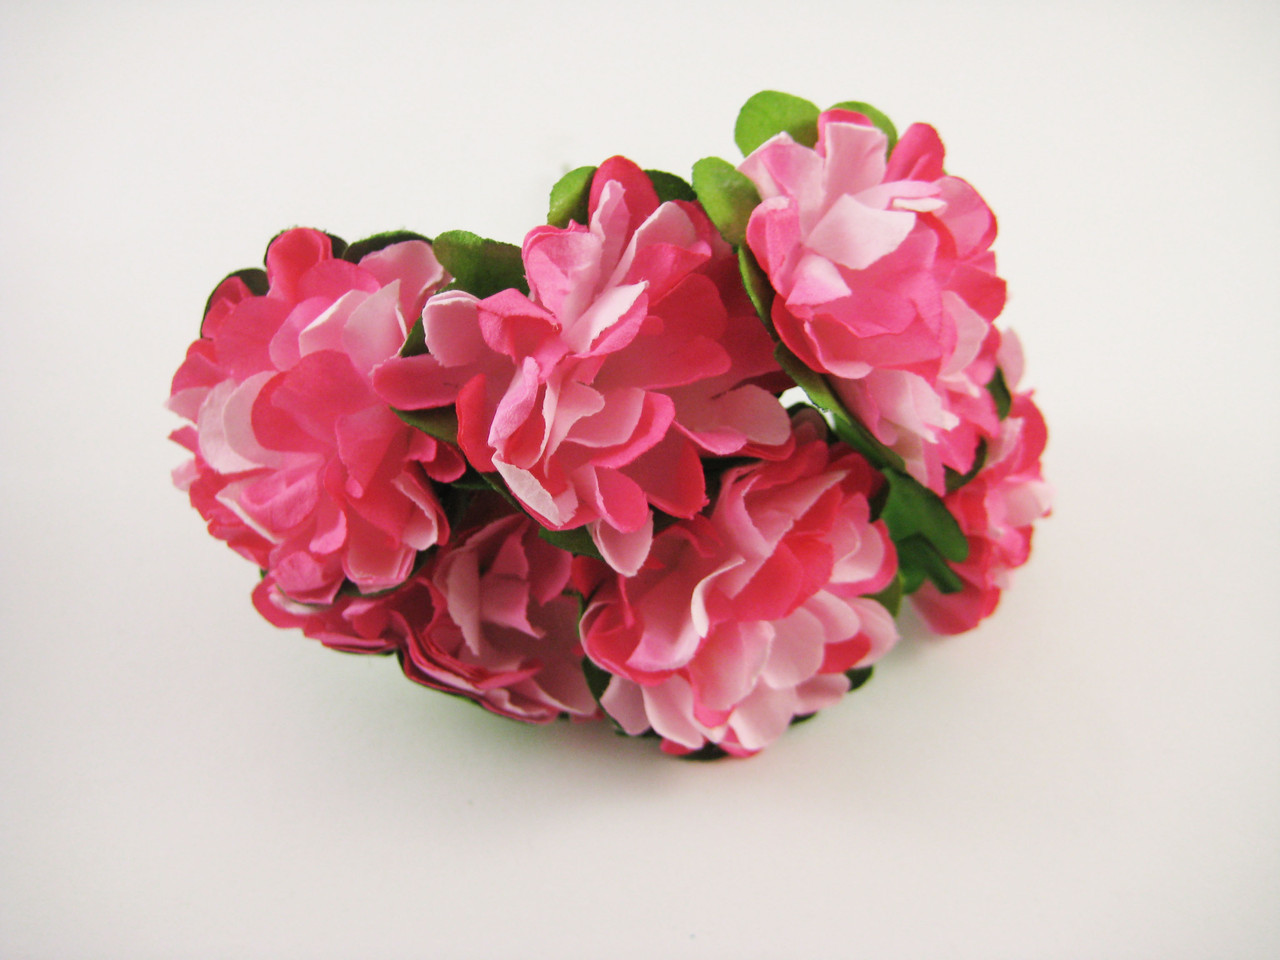 Квітка на дроті тканинна рожева 6 штук/пучок для рукоділля, хобі, декору